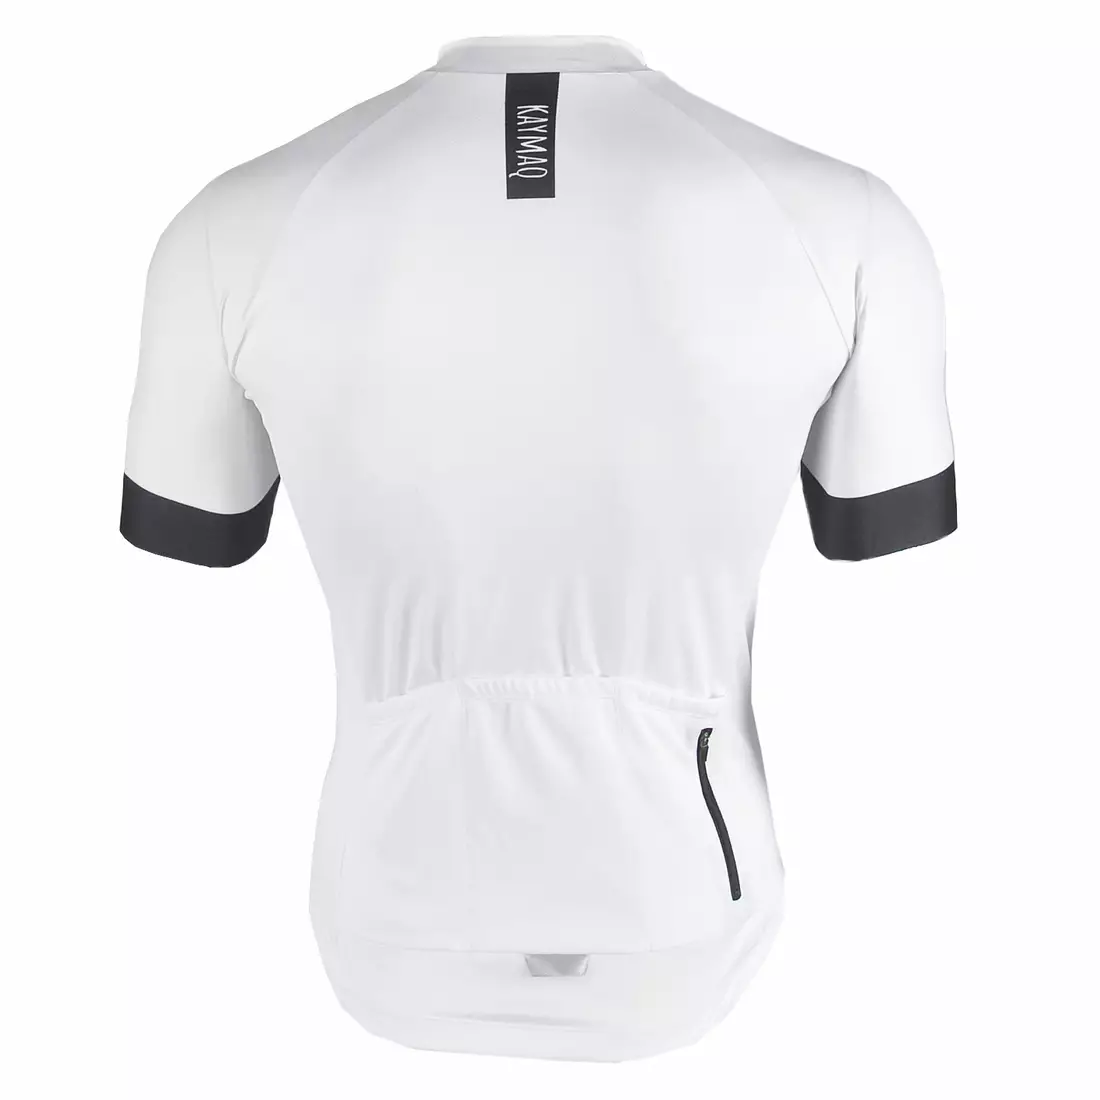 KAYMAQ BMK001 men's cycling jersey 01.165 white